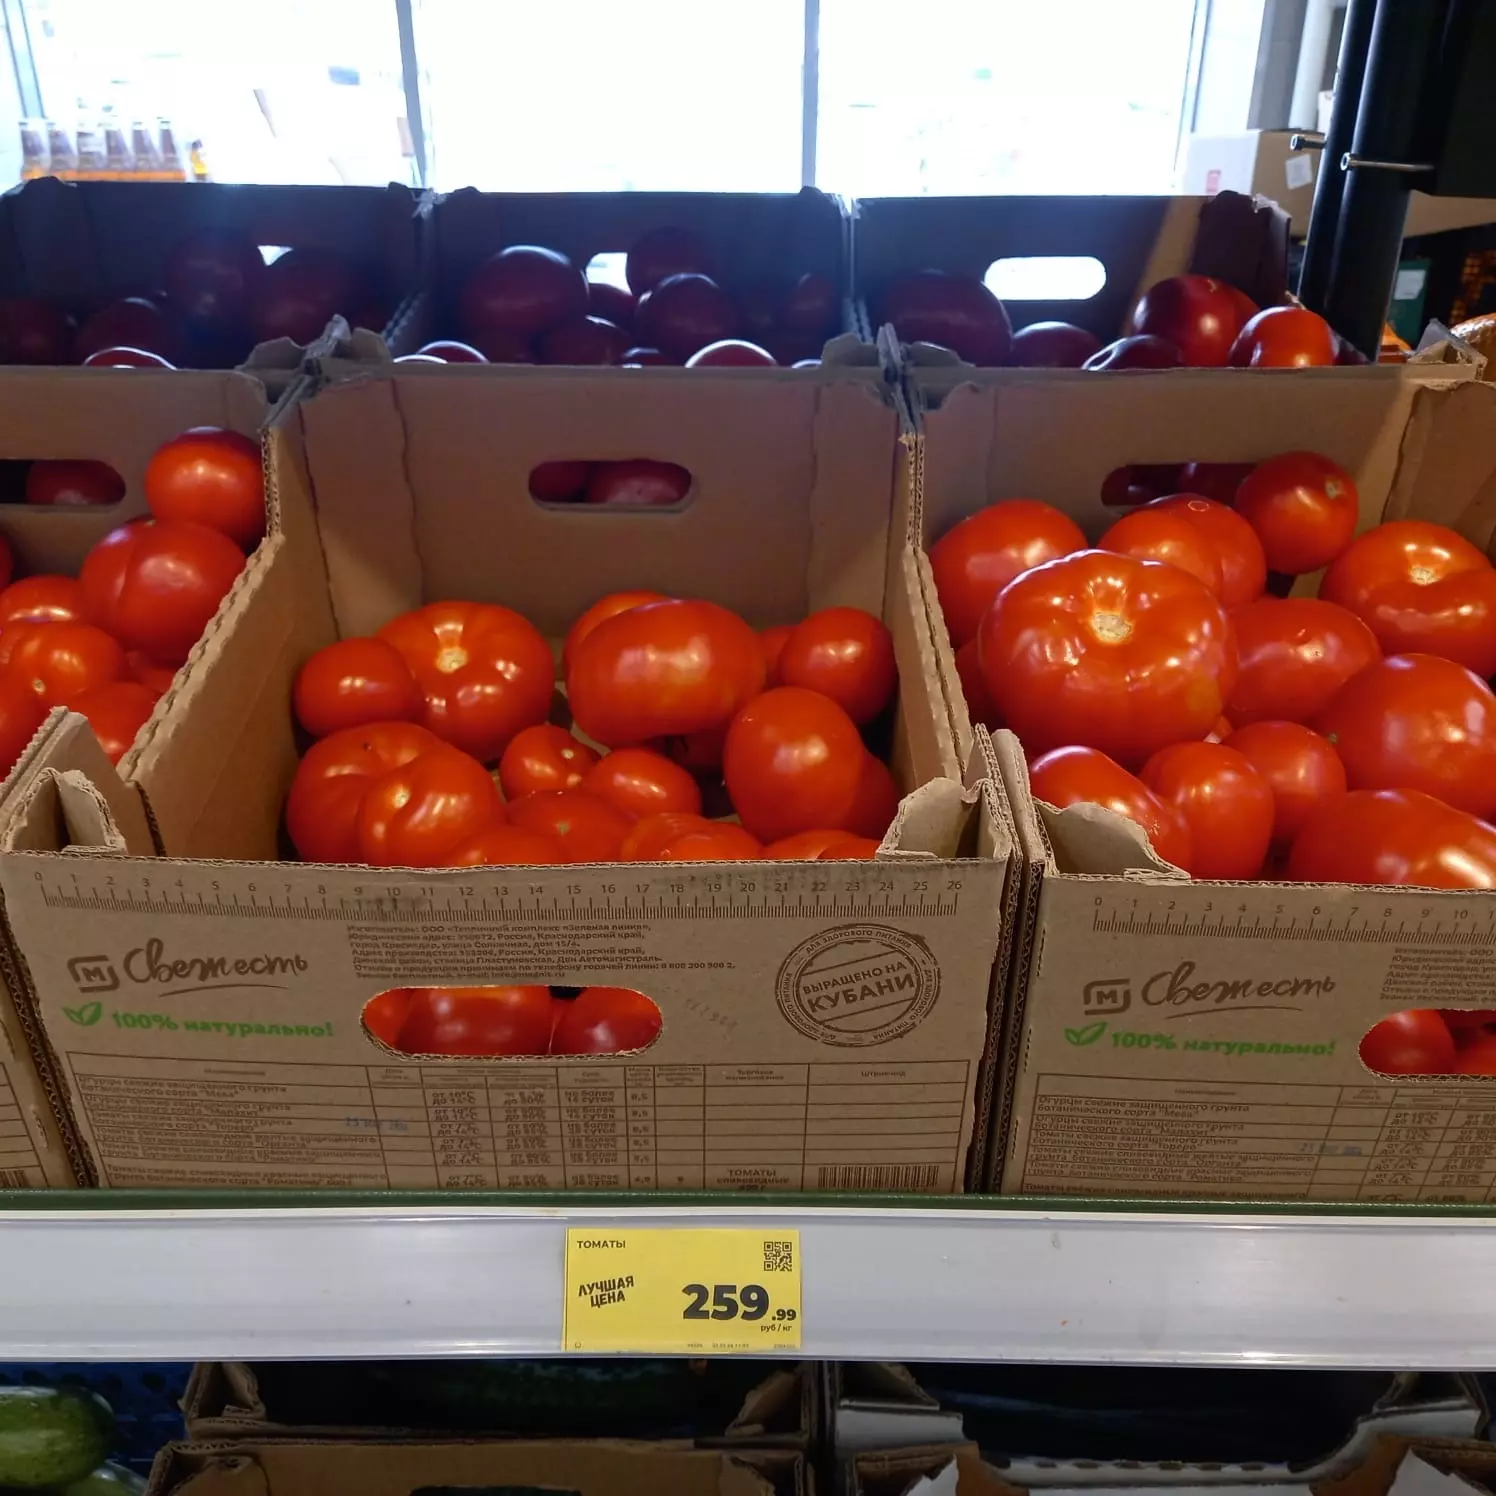 Берем дешевые, при этом абсолютно не понимая, как трех огурцов и пяти помидоров может хватить на месяц.